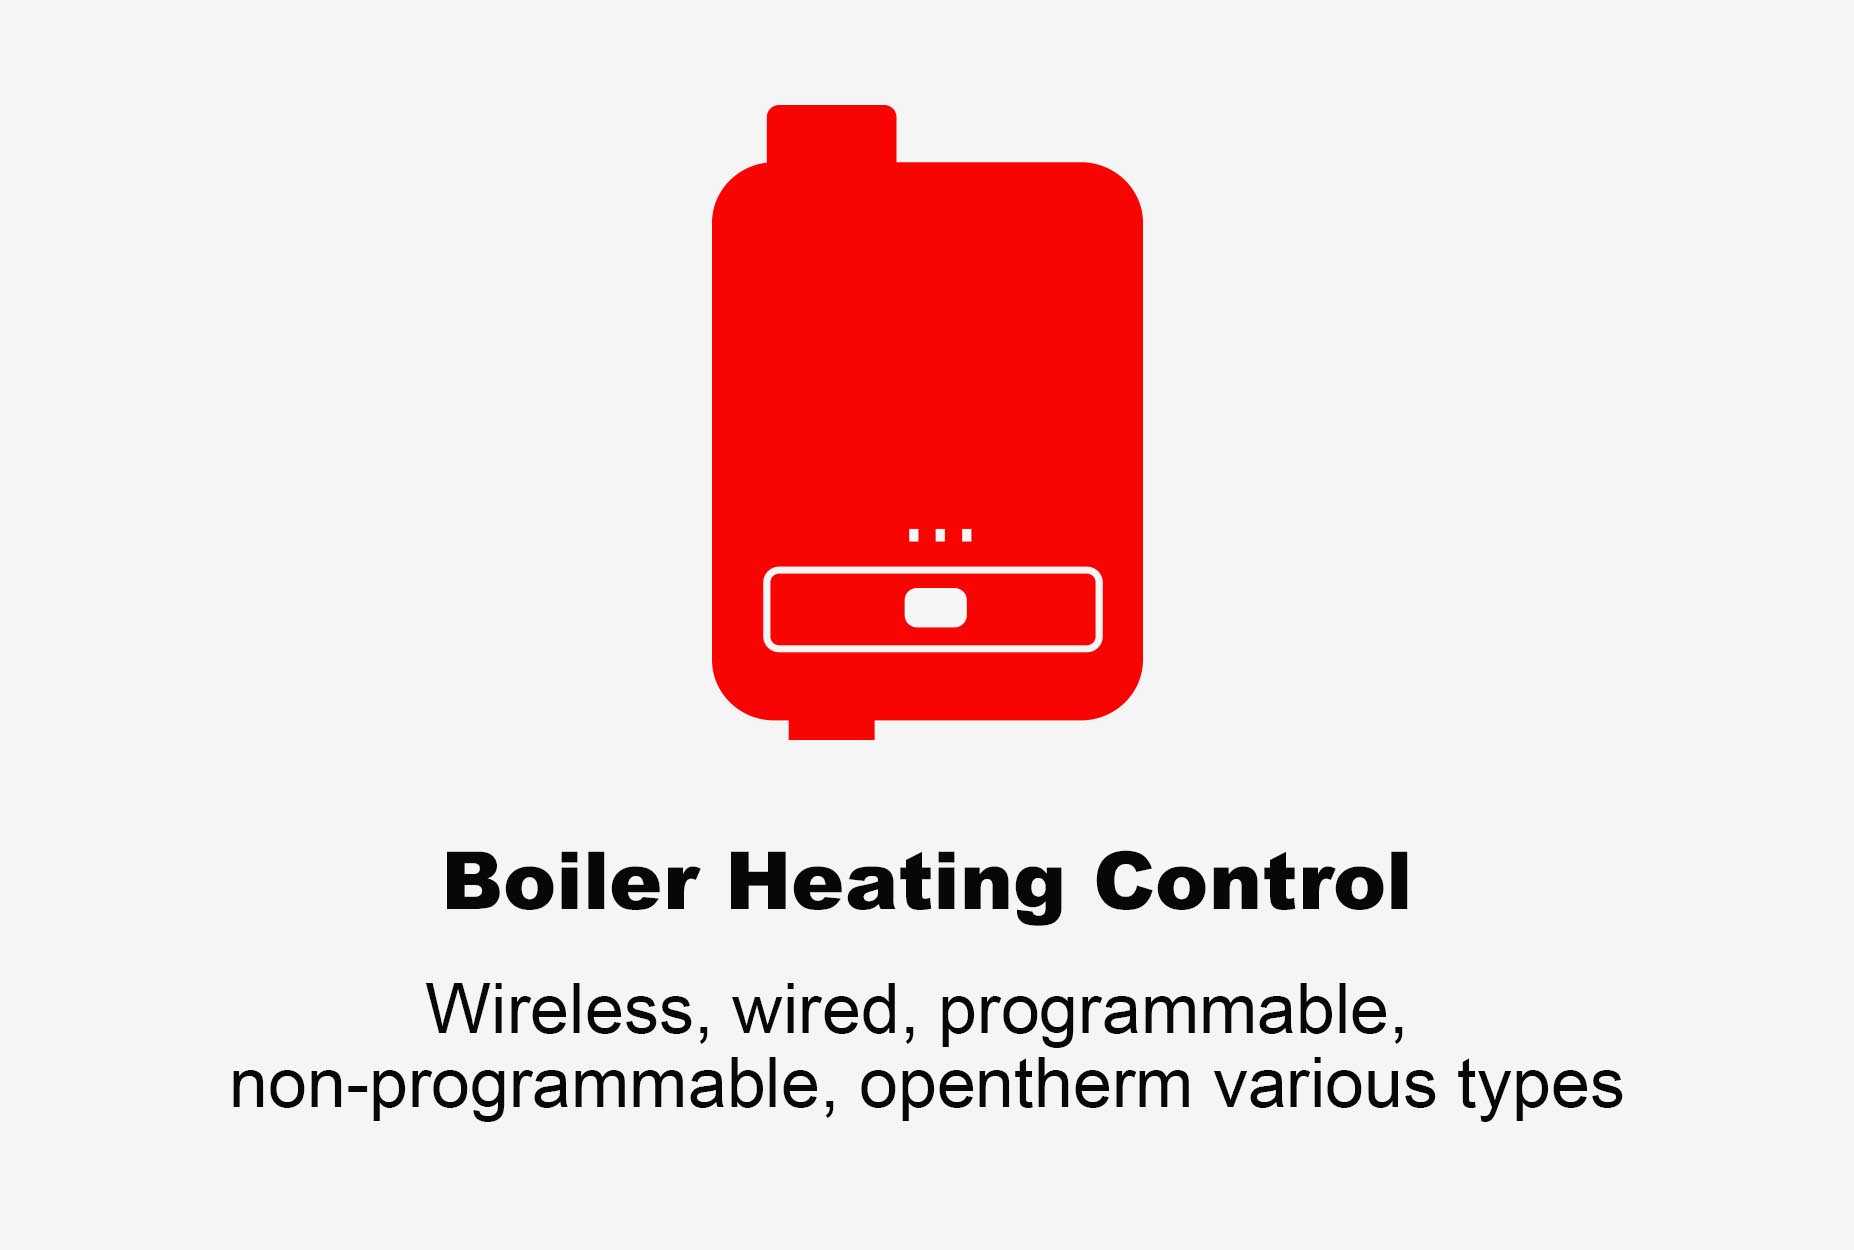 vezetékes termosztát, vezeték nélküli termosztát, wifi kazán termosztát, programozható termosztát, akkumulátoros termosztát, opentherm termosztát